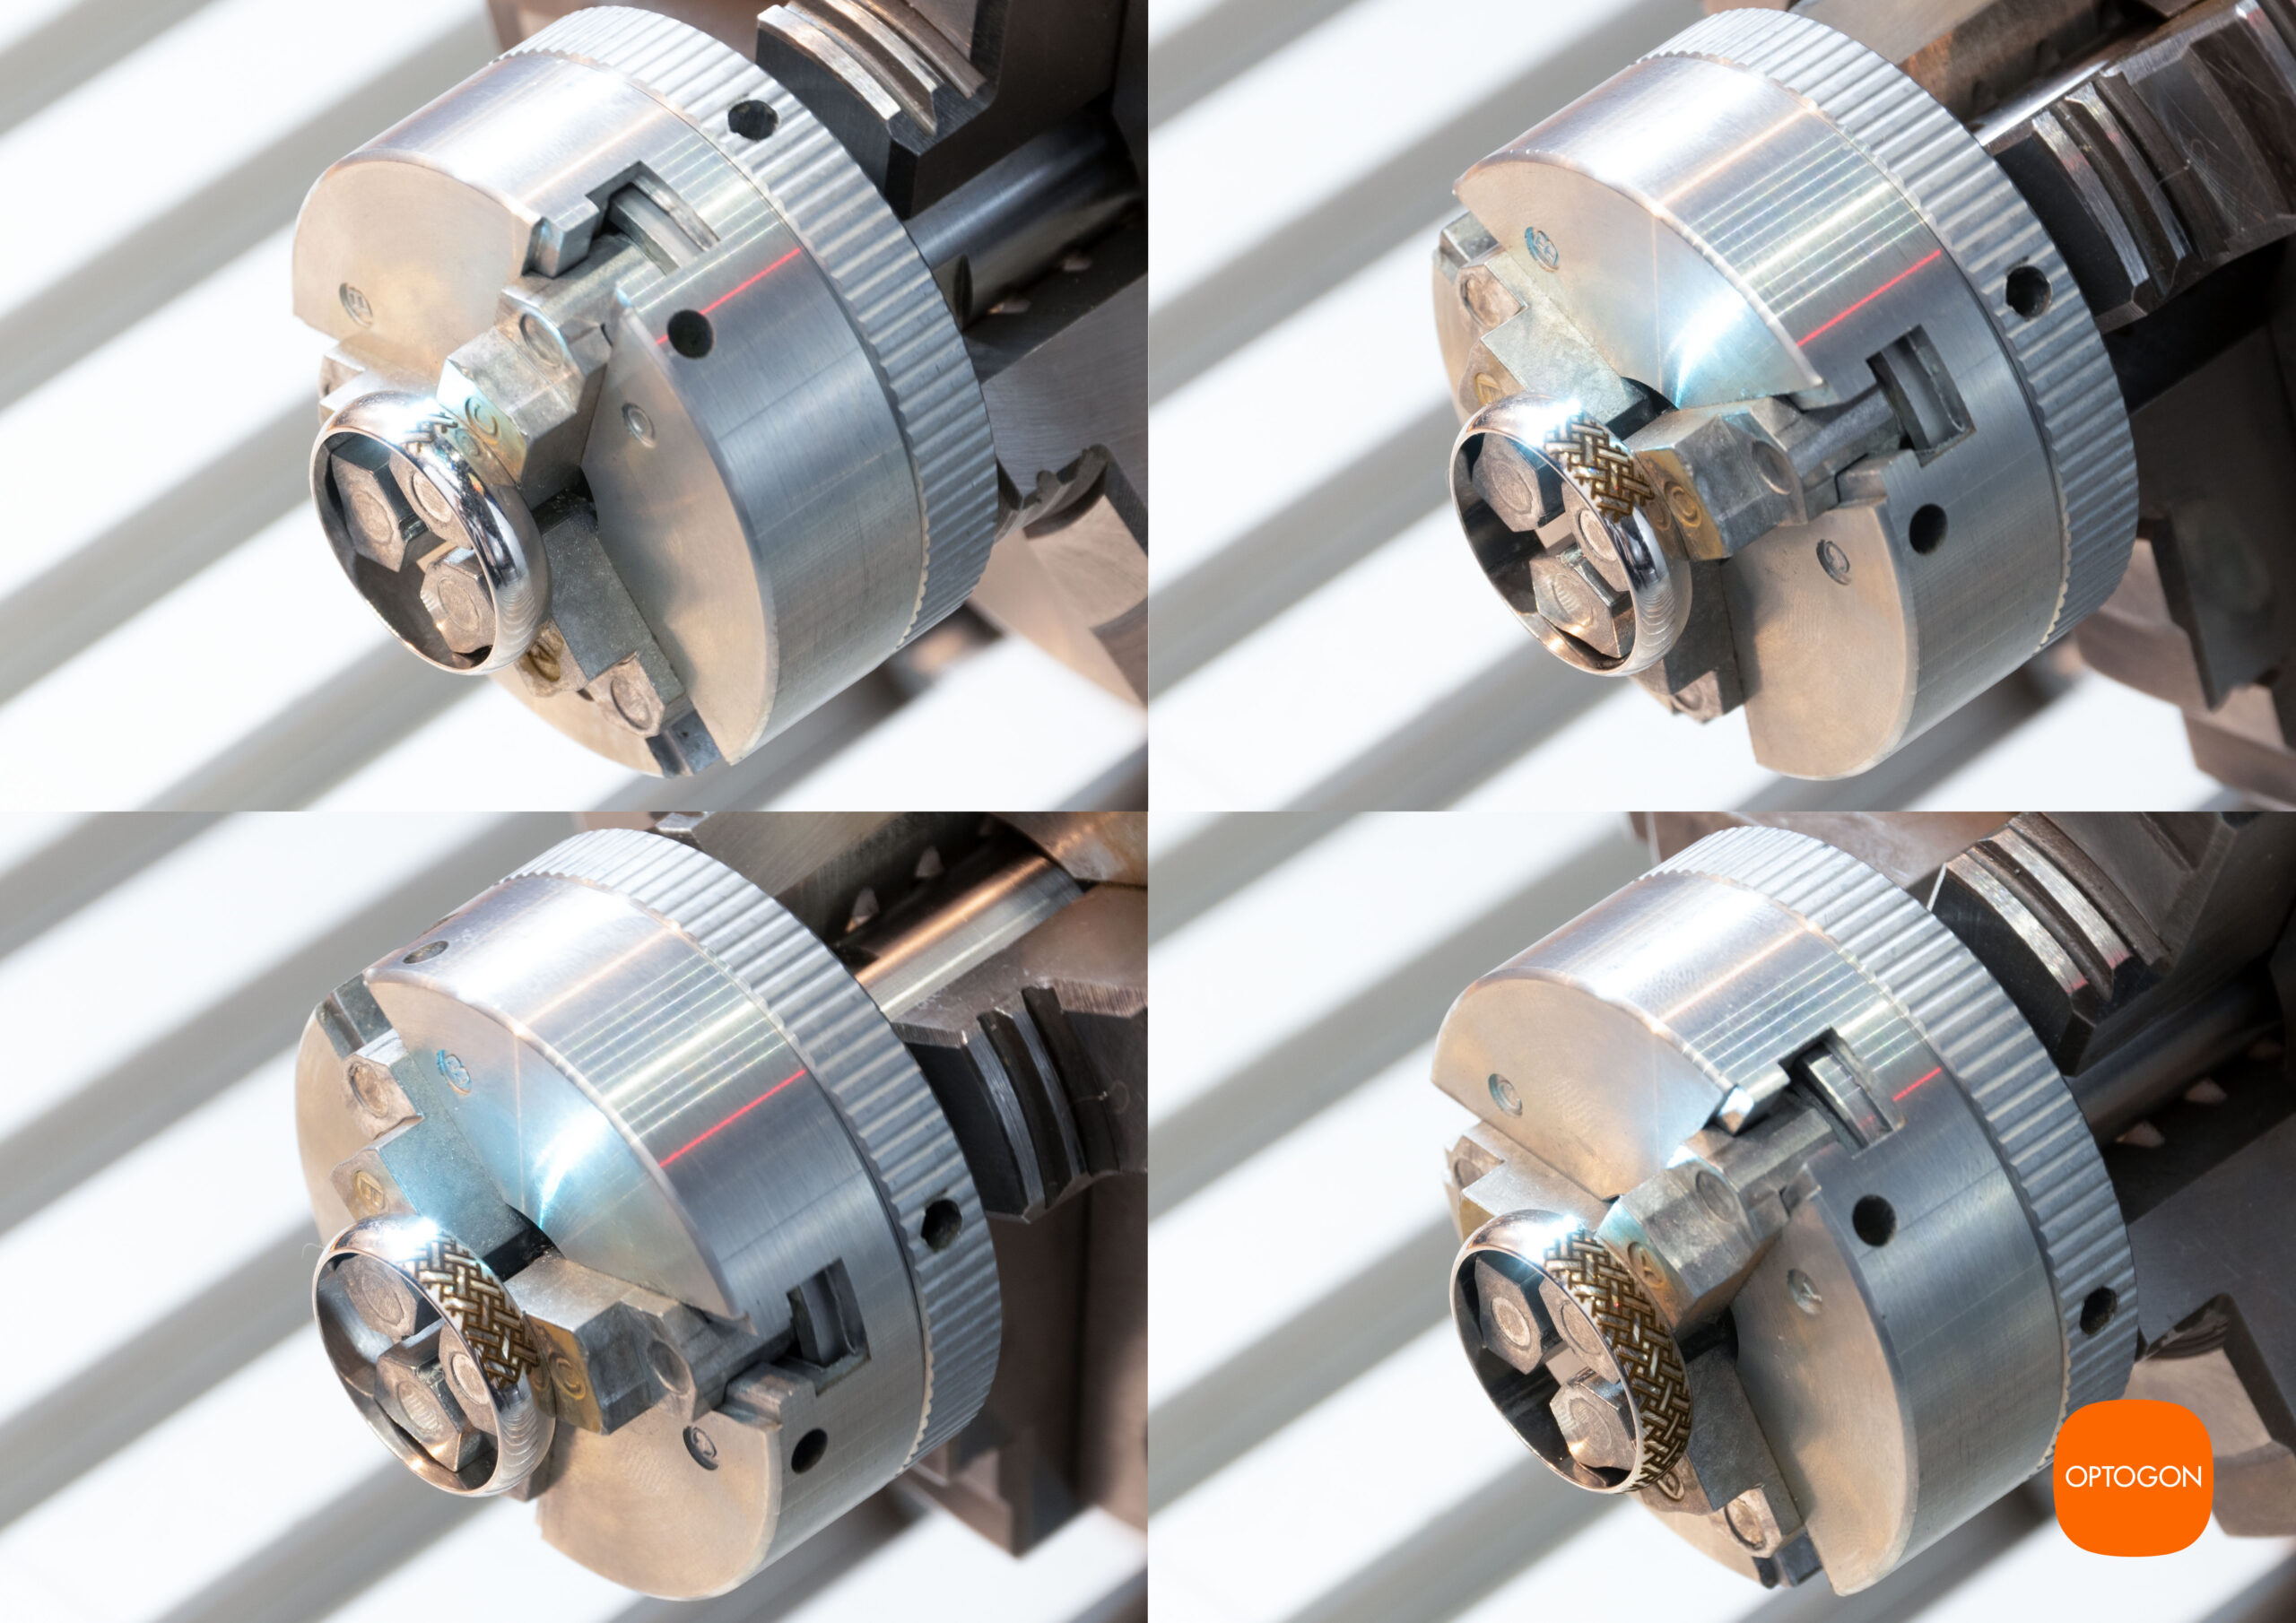 Die Laserbearbeitung mit einer NC-Drehachse bietet neben ihrer Effizienz auch eine erhöhte Präzision im Vergleich zu herkömmlichen Bearbeitungsmethoden.